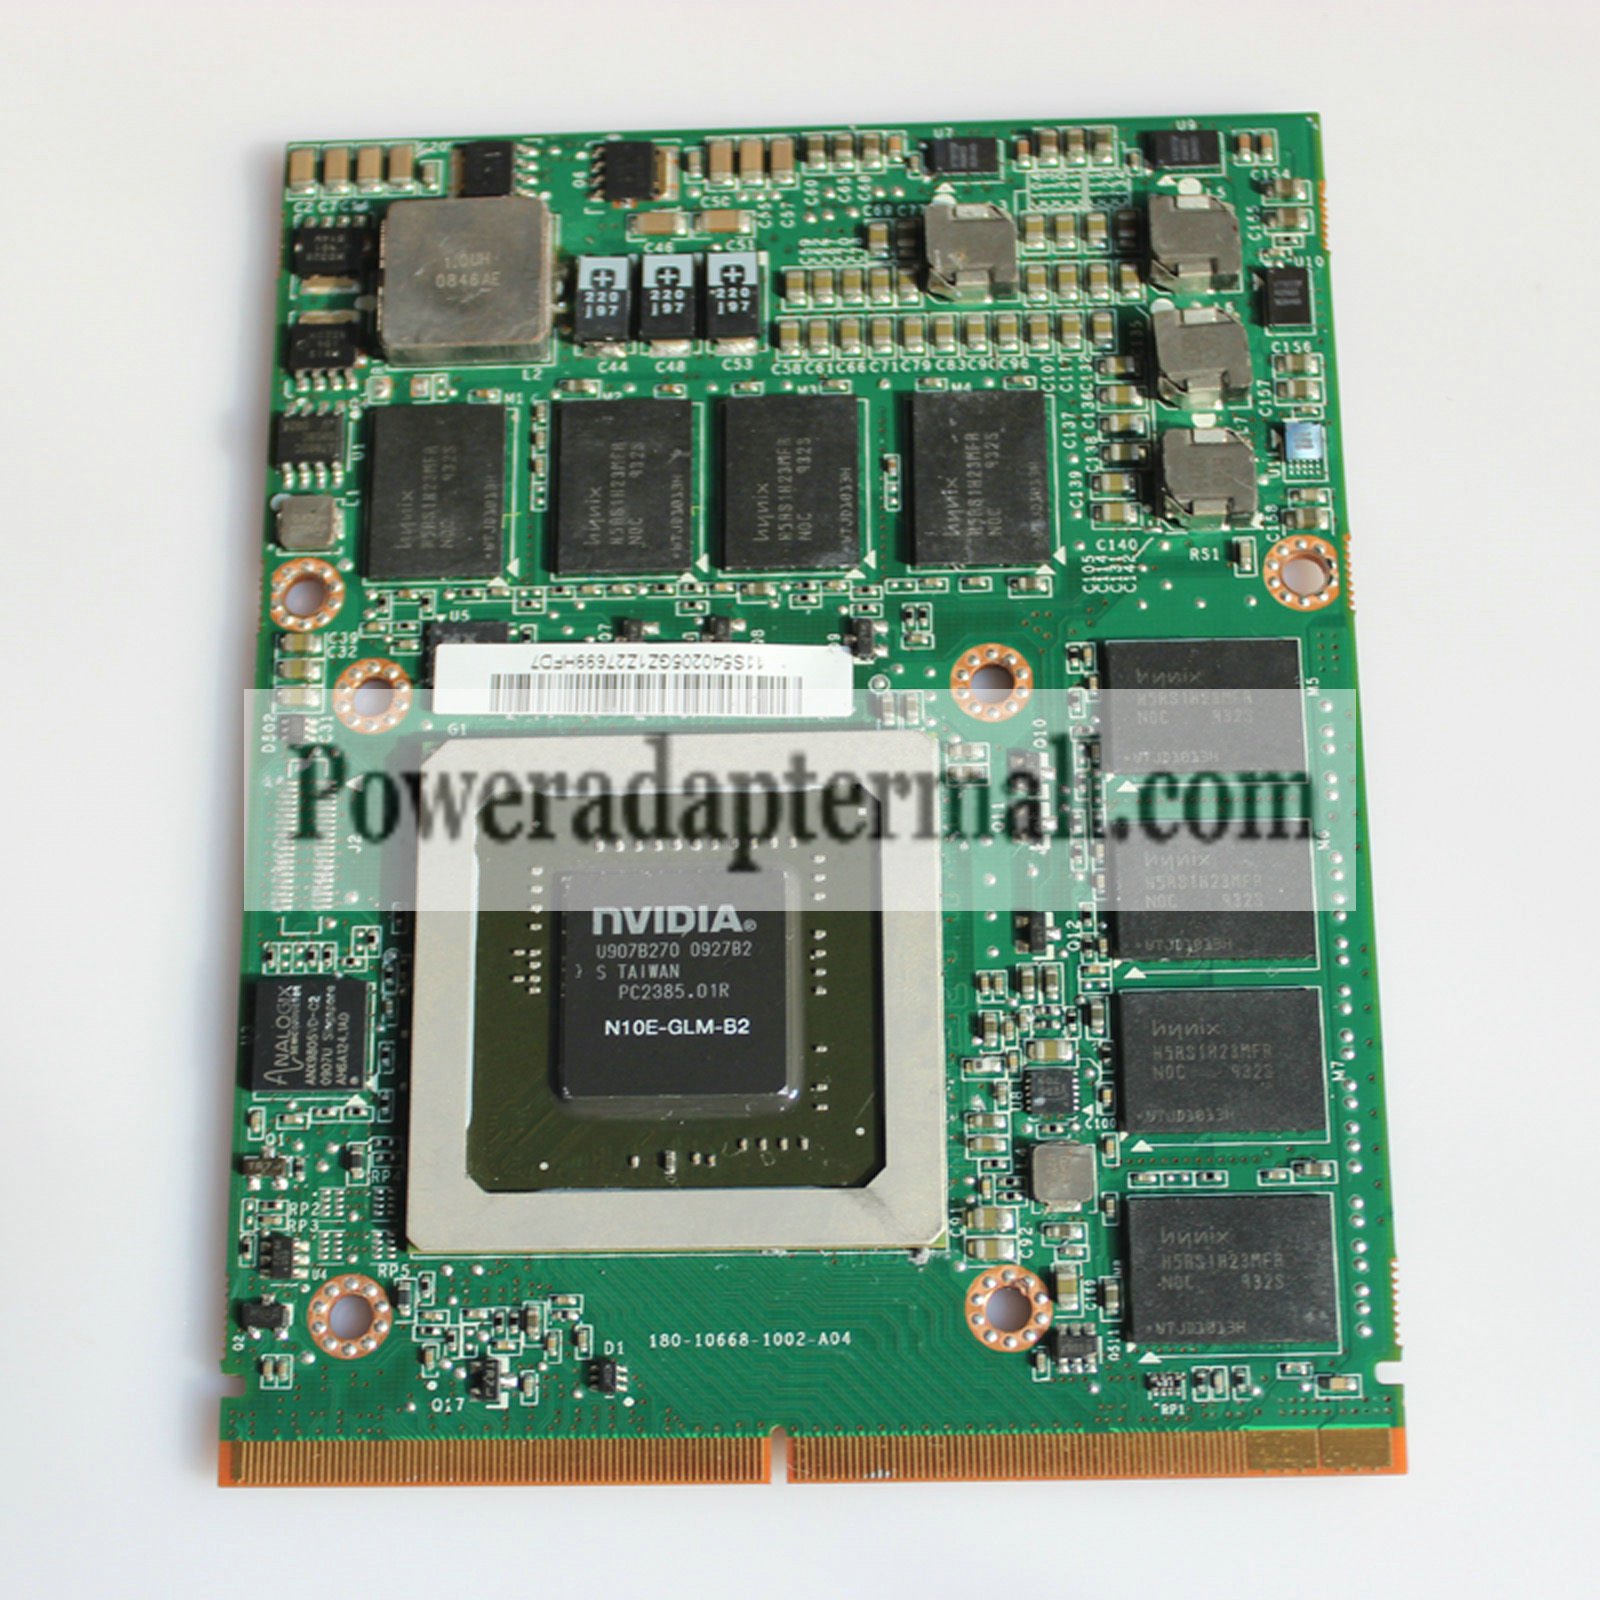 Lenovo nVidia Quadro FX2800M N10E-GLM-B2 DDR3 1GB Video Card